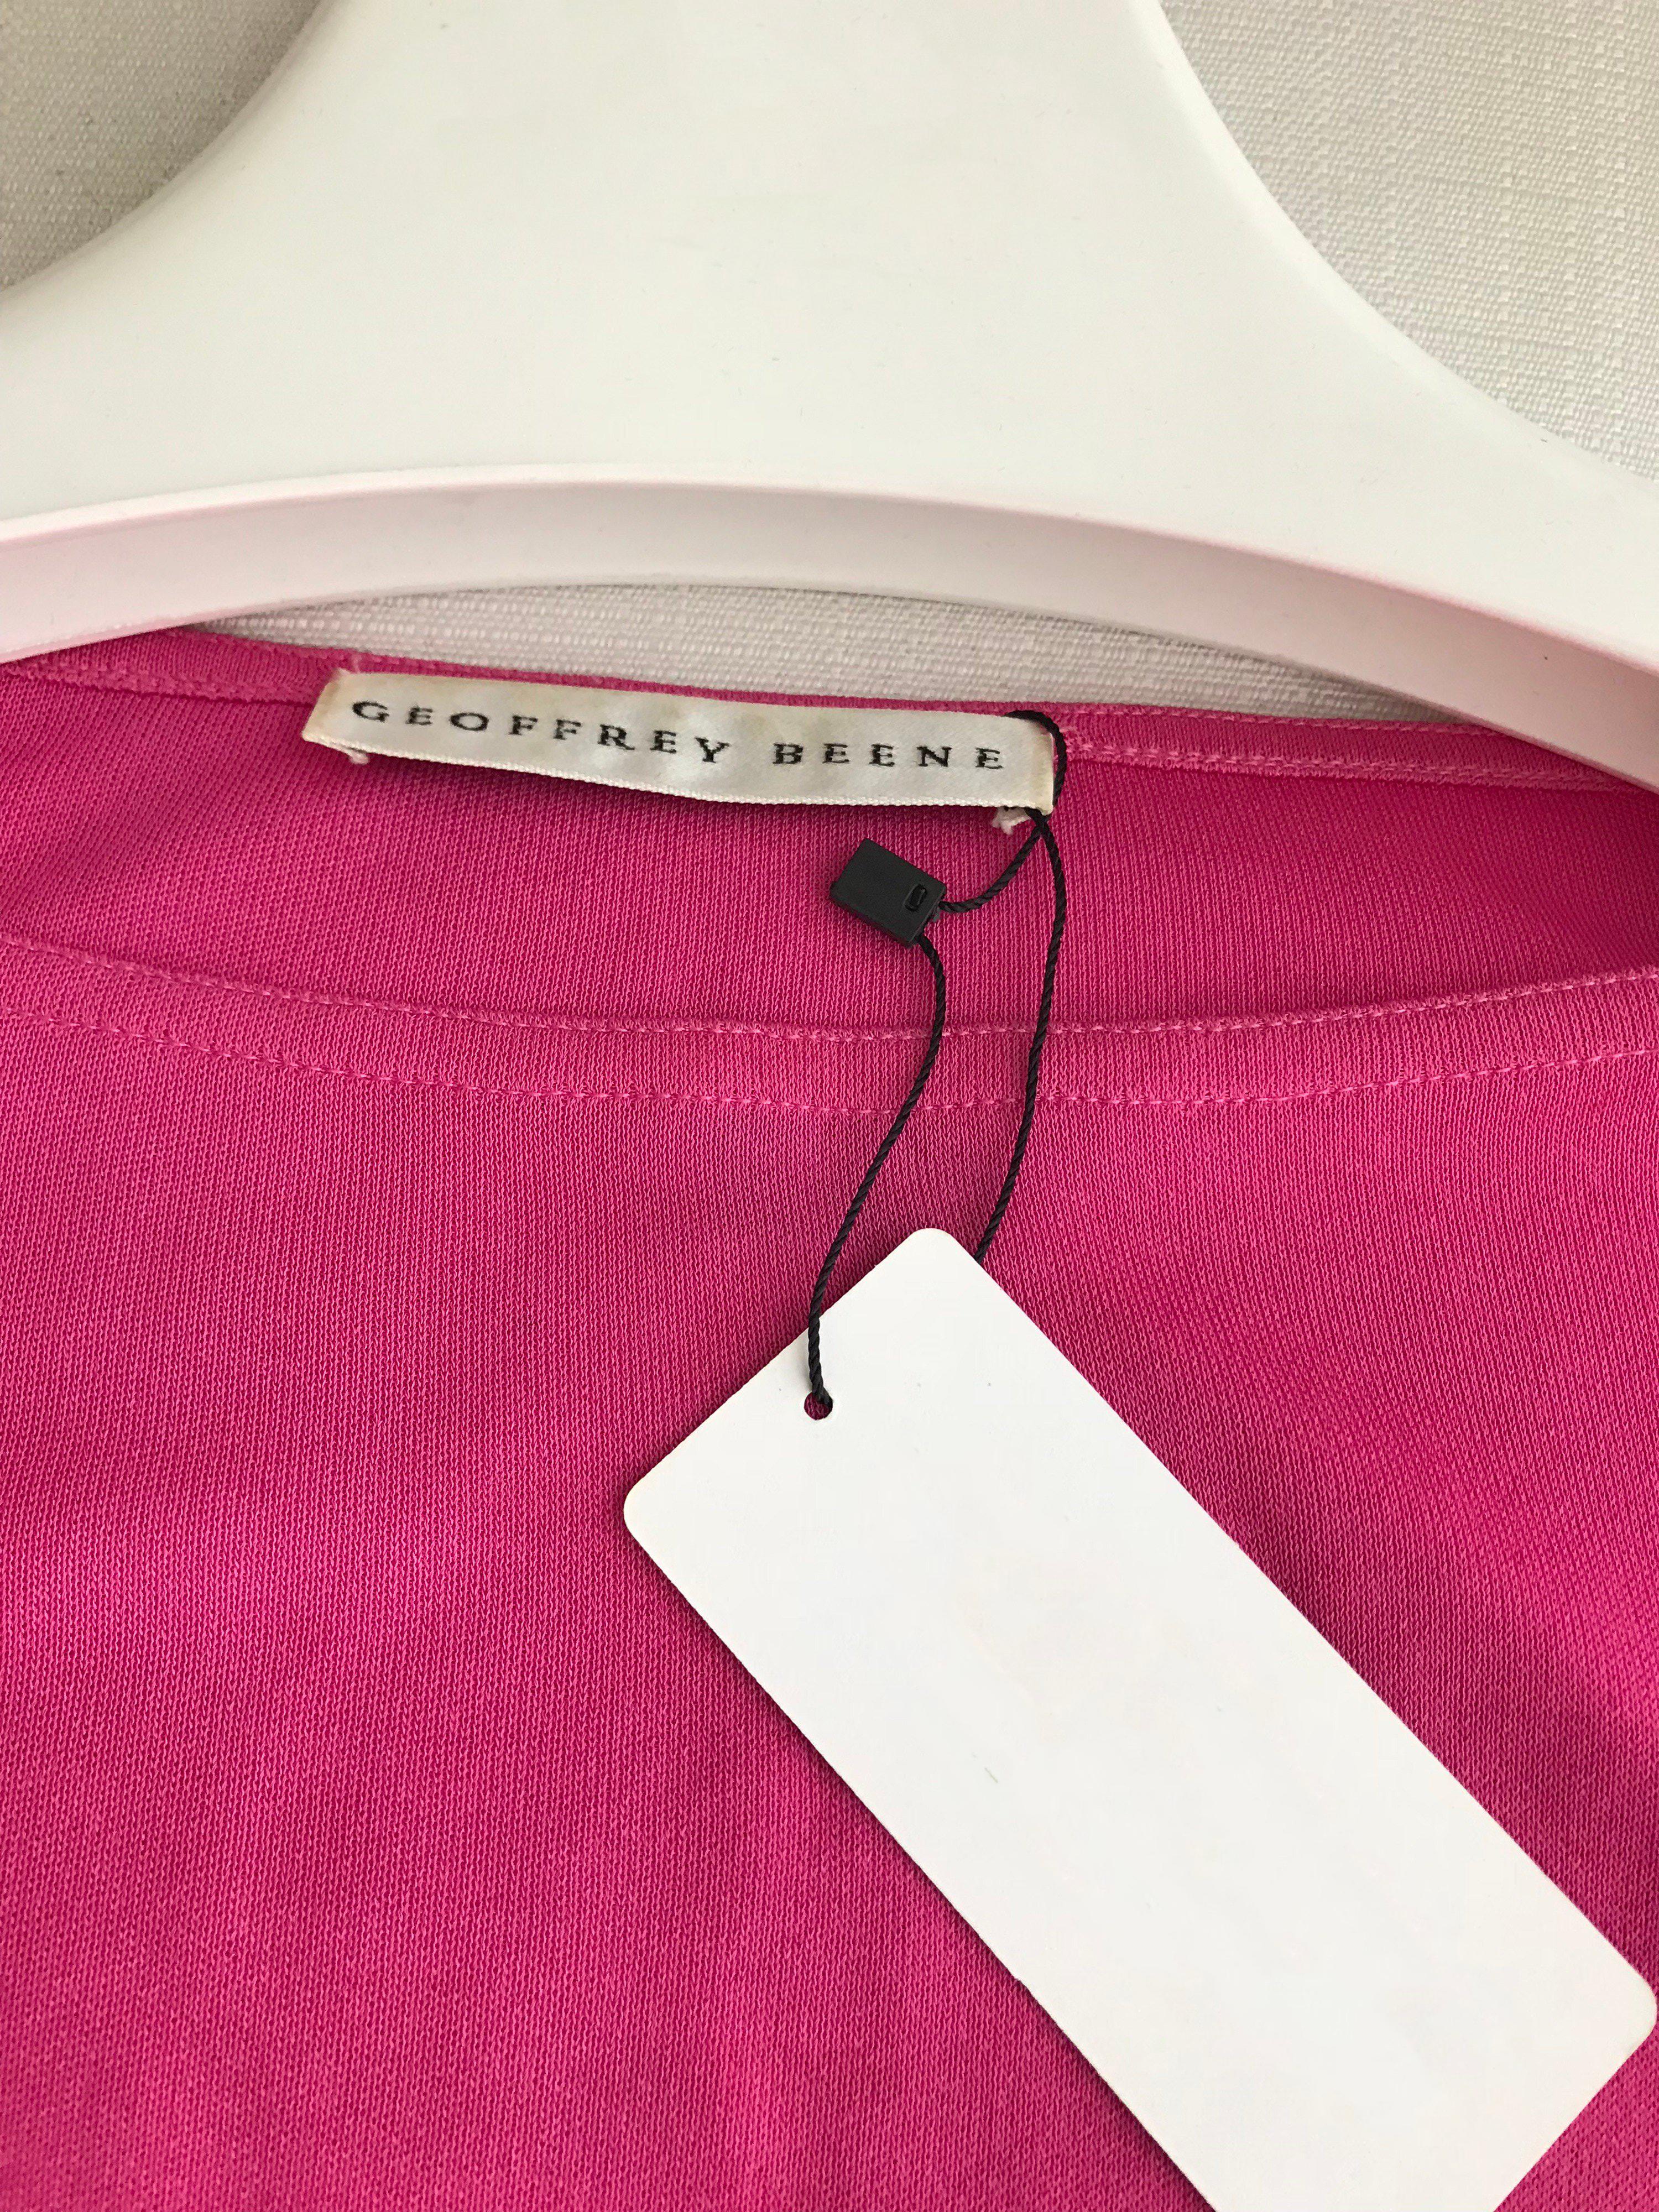 Simple et élégante Vintage By blouse à manches longues en jersey rose mat et jupe maxi wrap. Taille : Petit - Moyen
Mesures du chemisier : 34